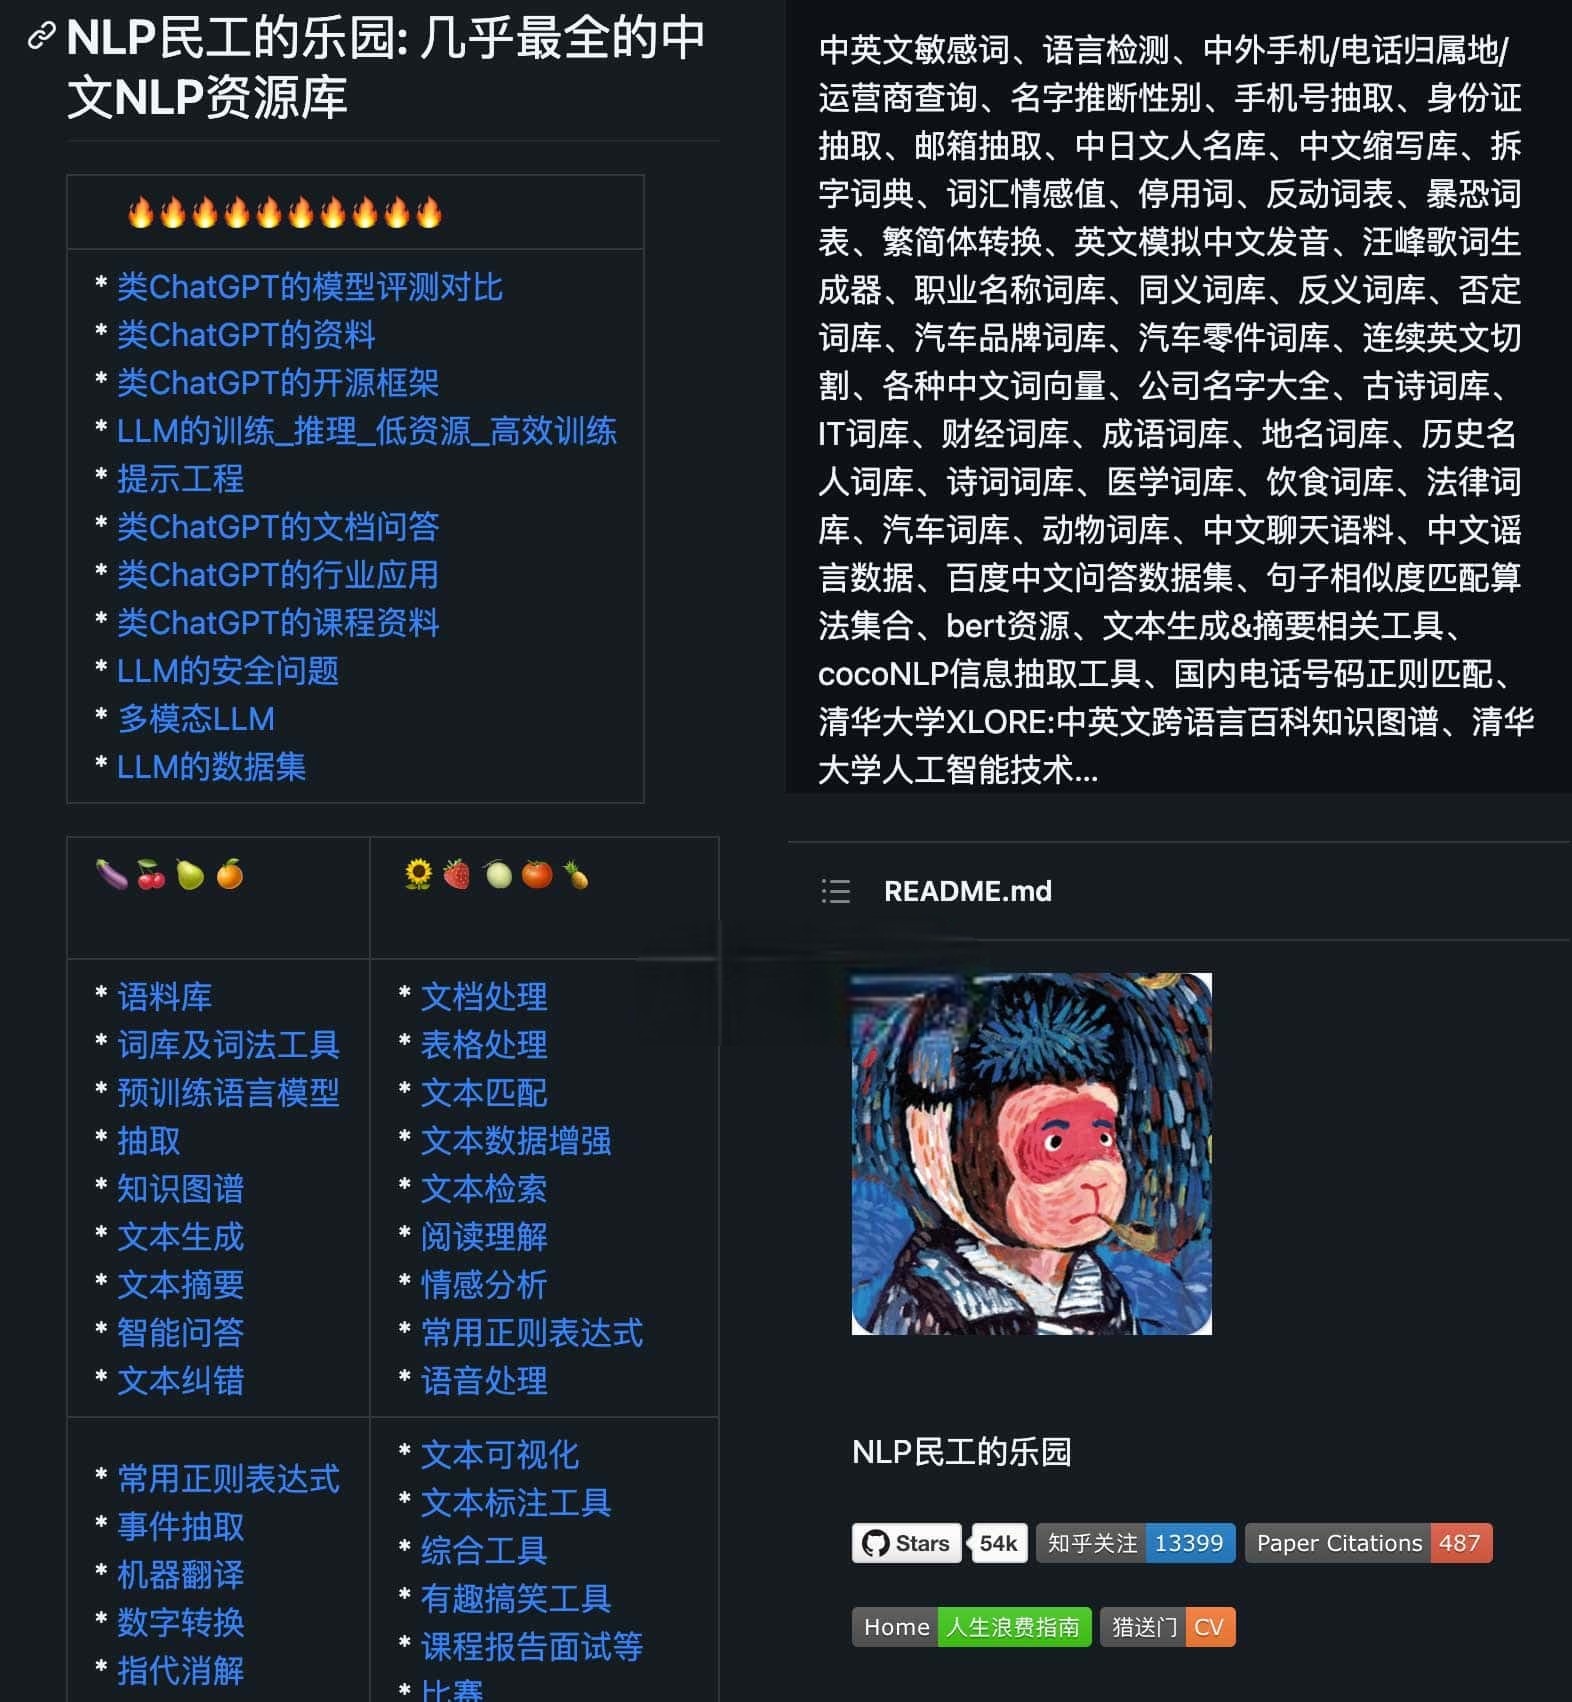 funNLP-最全的中文NLP资源库